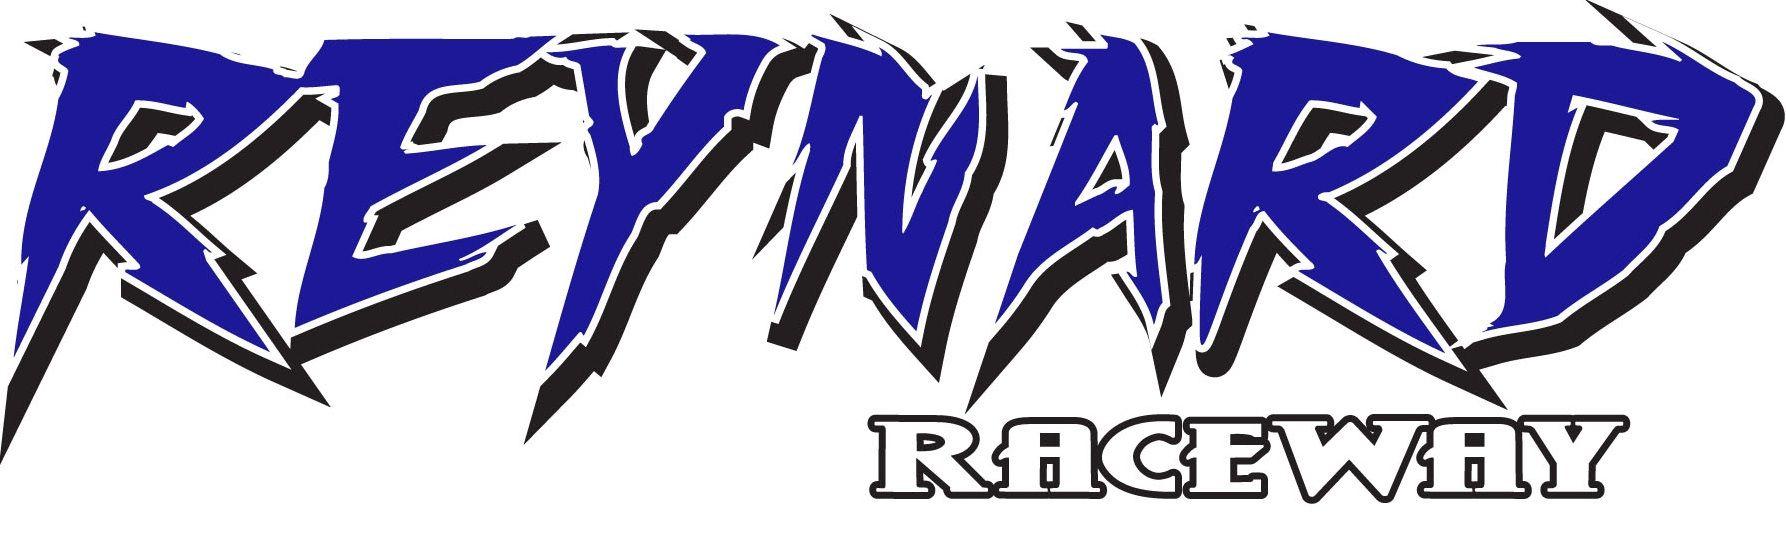 Freedom Blue Logo - Reynard Raceway Blue Logo - Warriors for Freedom